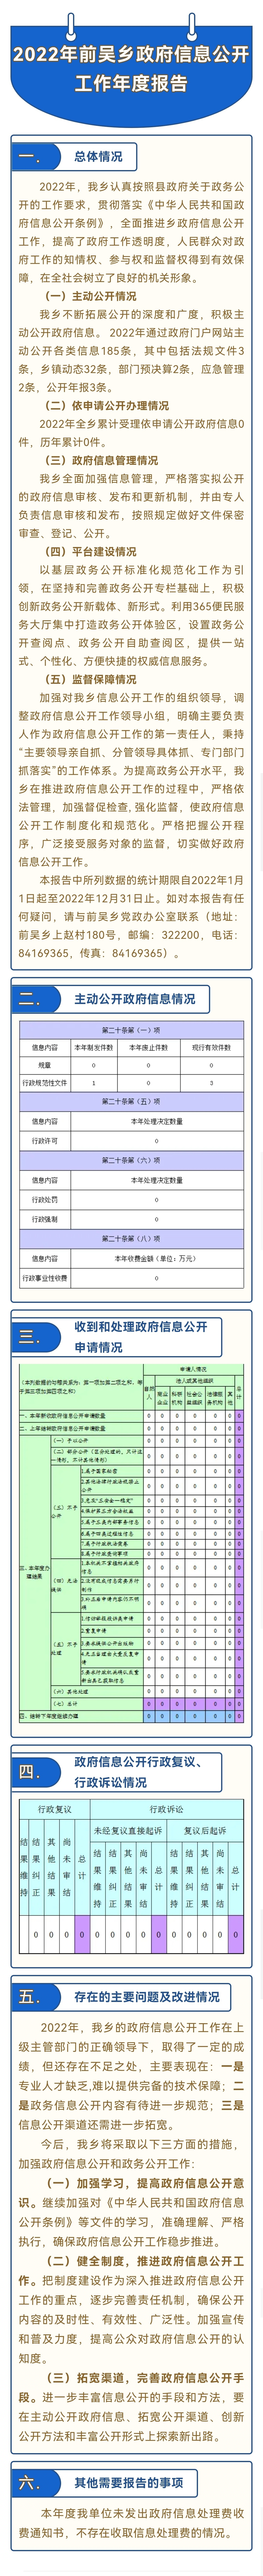 2022年前吴乡政府信息公开工作年度报告图解.jpg